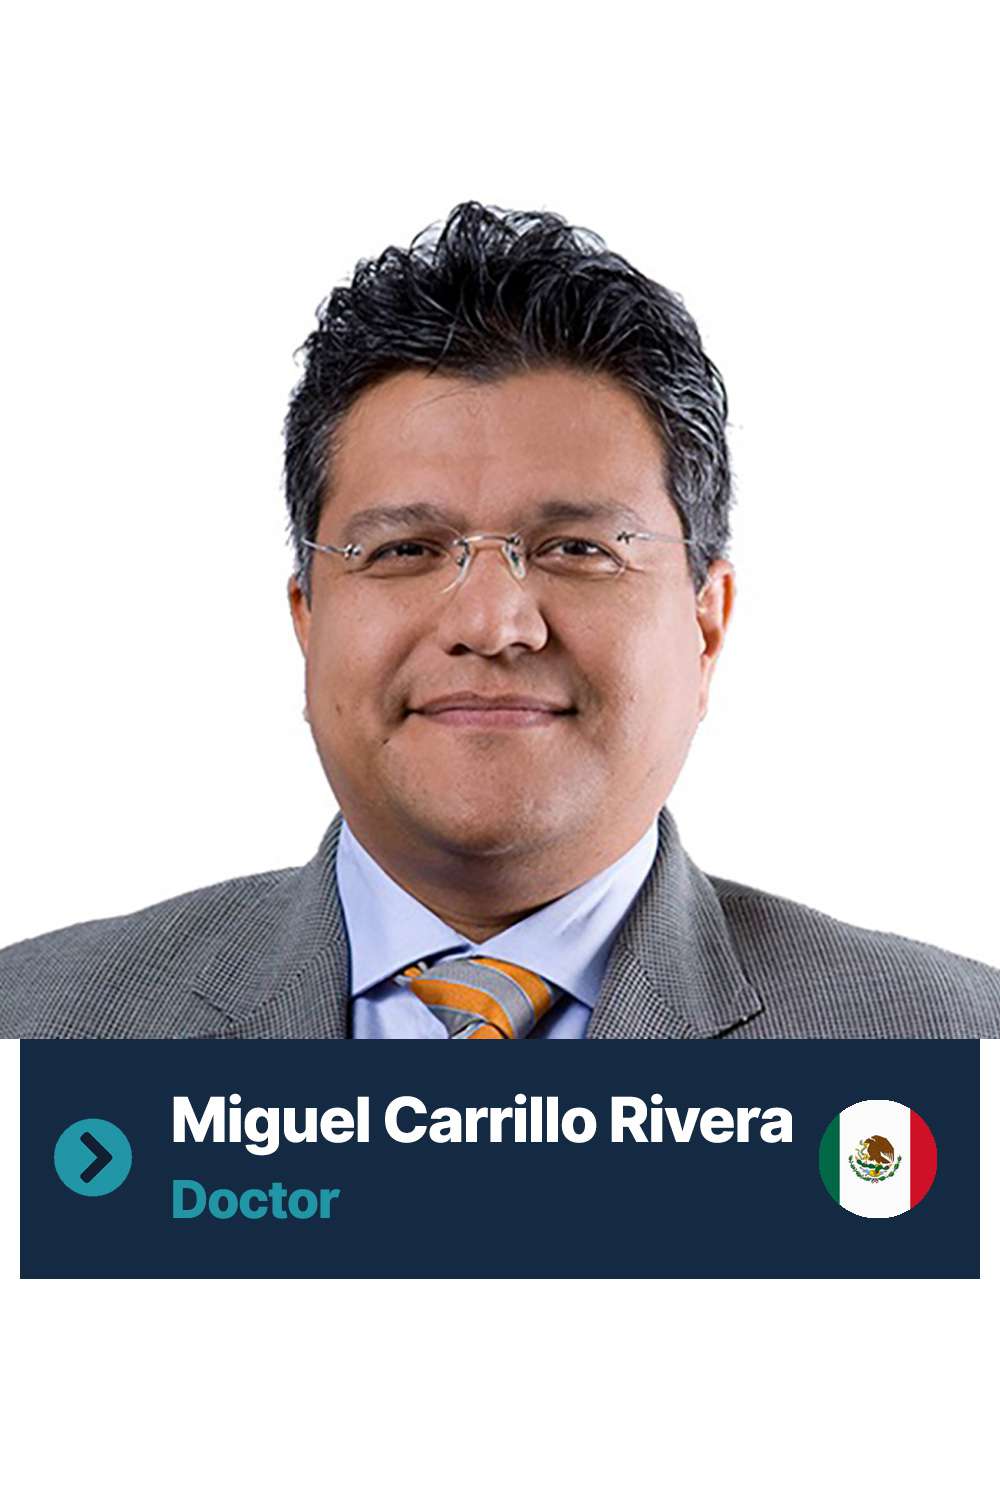 Miguel Carrillo Rivera